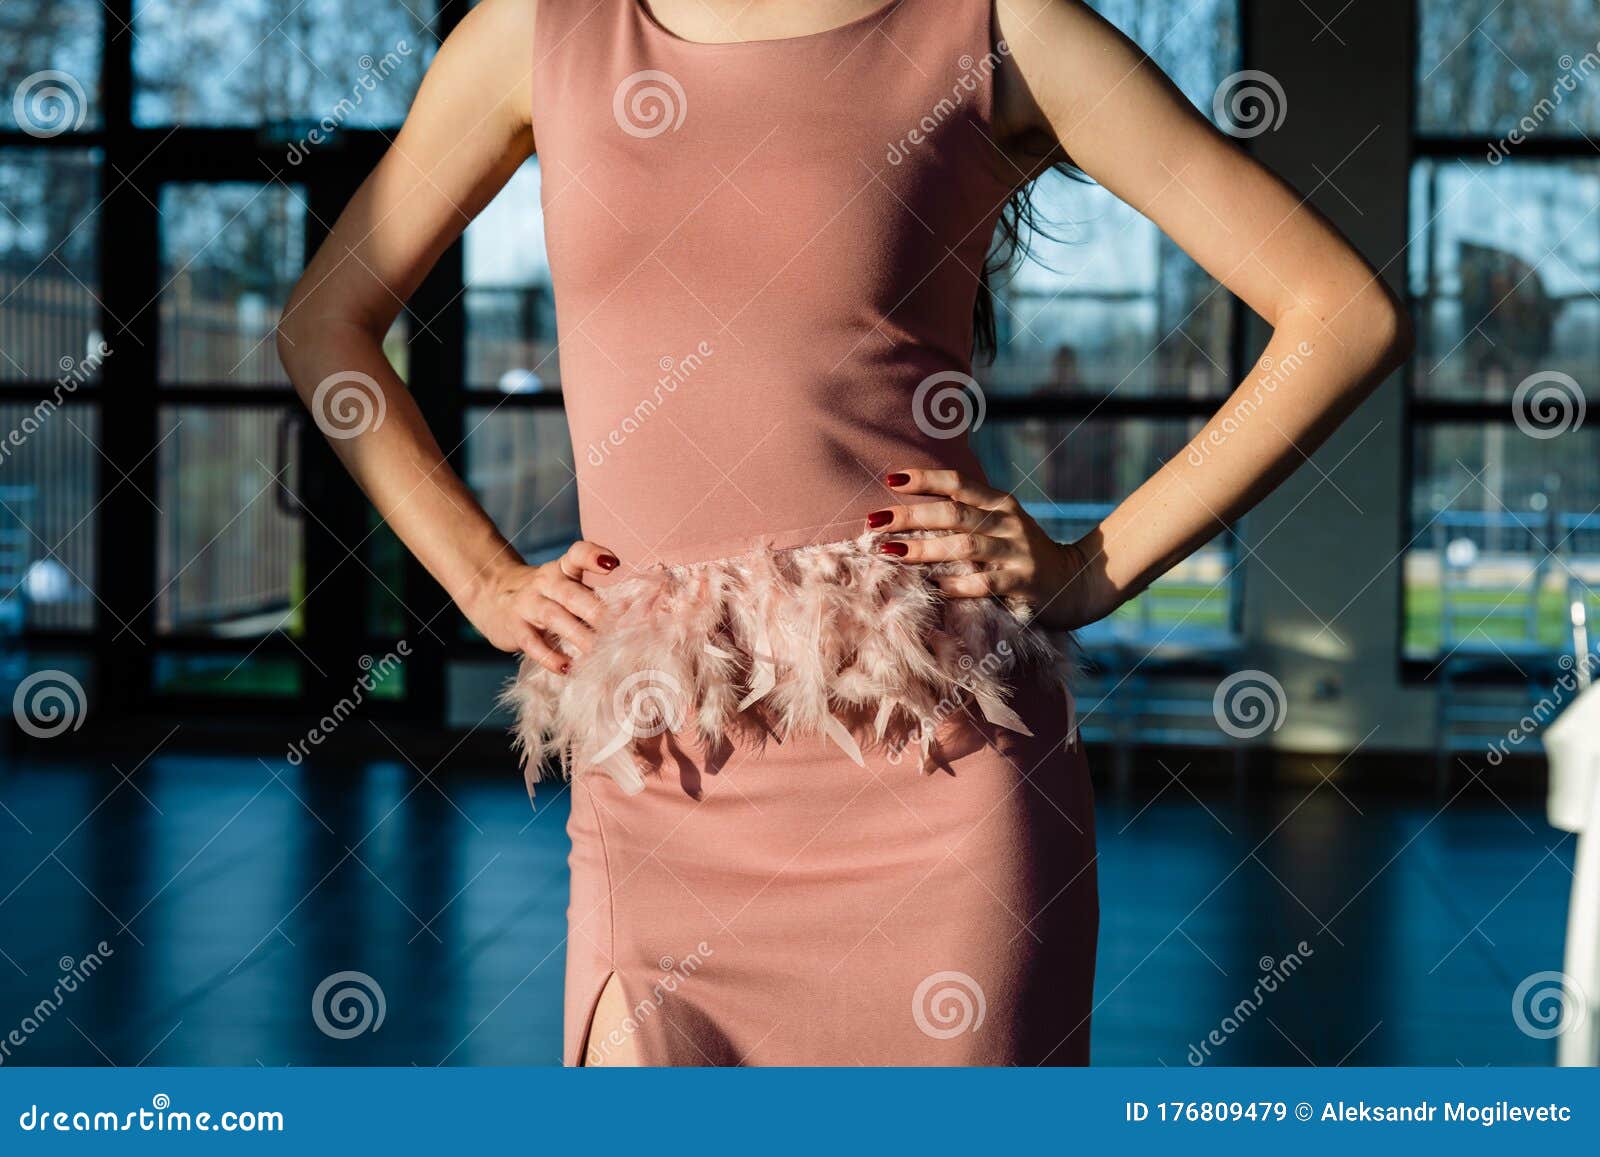 https://thumbs.dreamstime.com/z/hermosa-joven-mujer-de-vestir-rosa-manos-en-la-cintura-cintur%C3%B3n-hecho-plumas-naturales-bonita-y-espaciosa-habitaci%C3%B3n-con-grandes-176809479.jpg